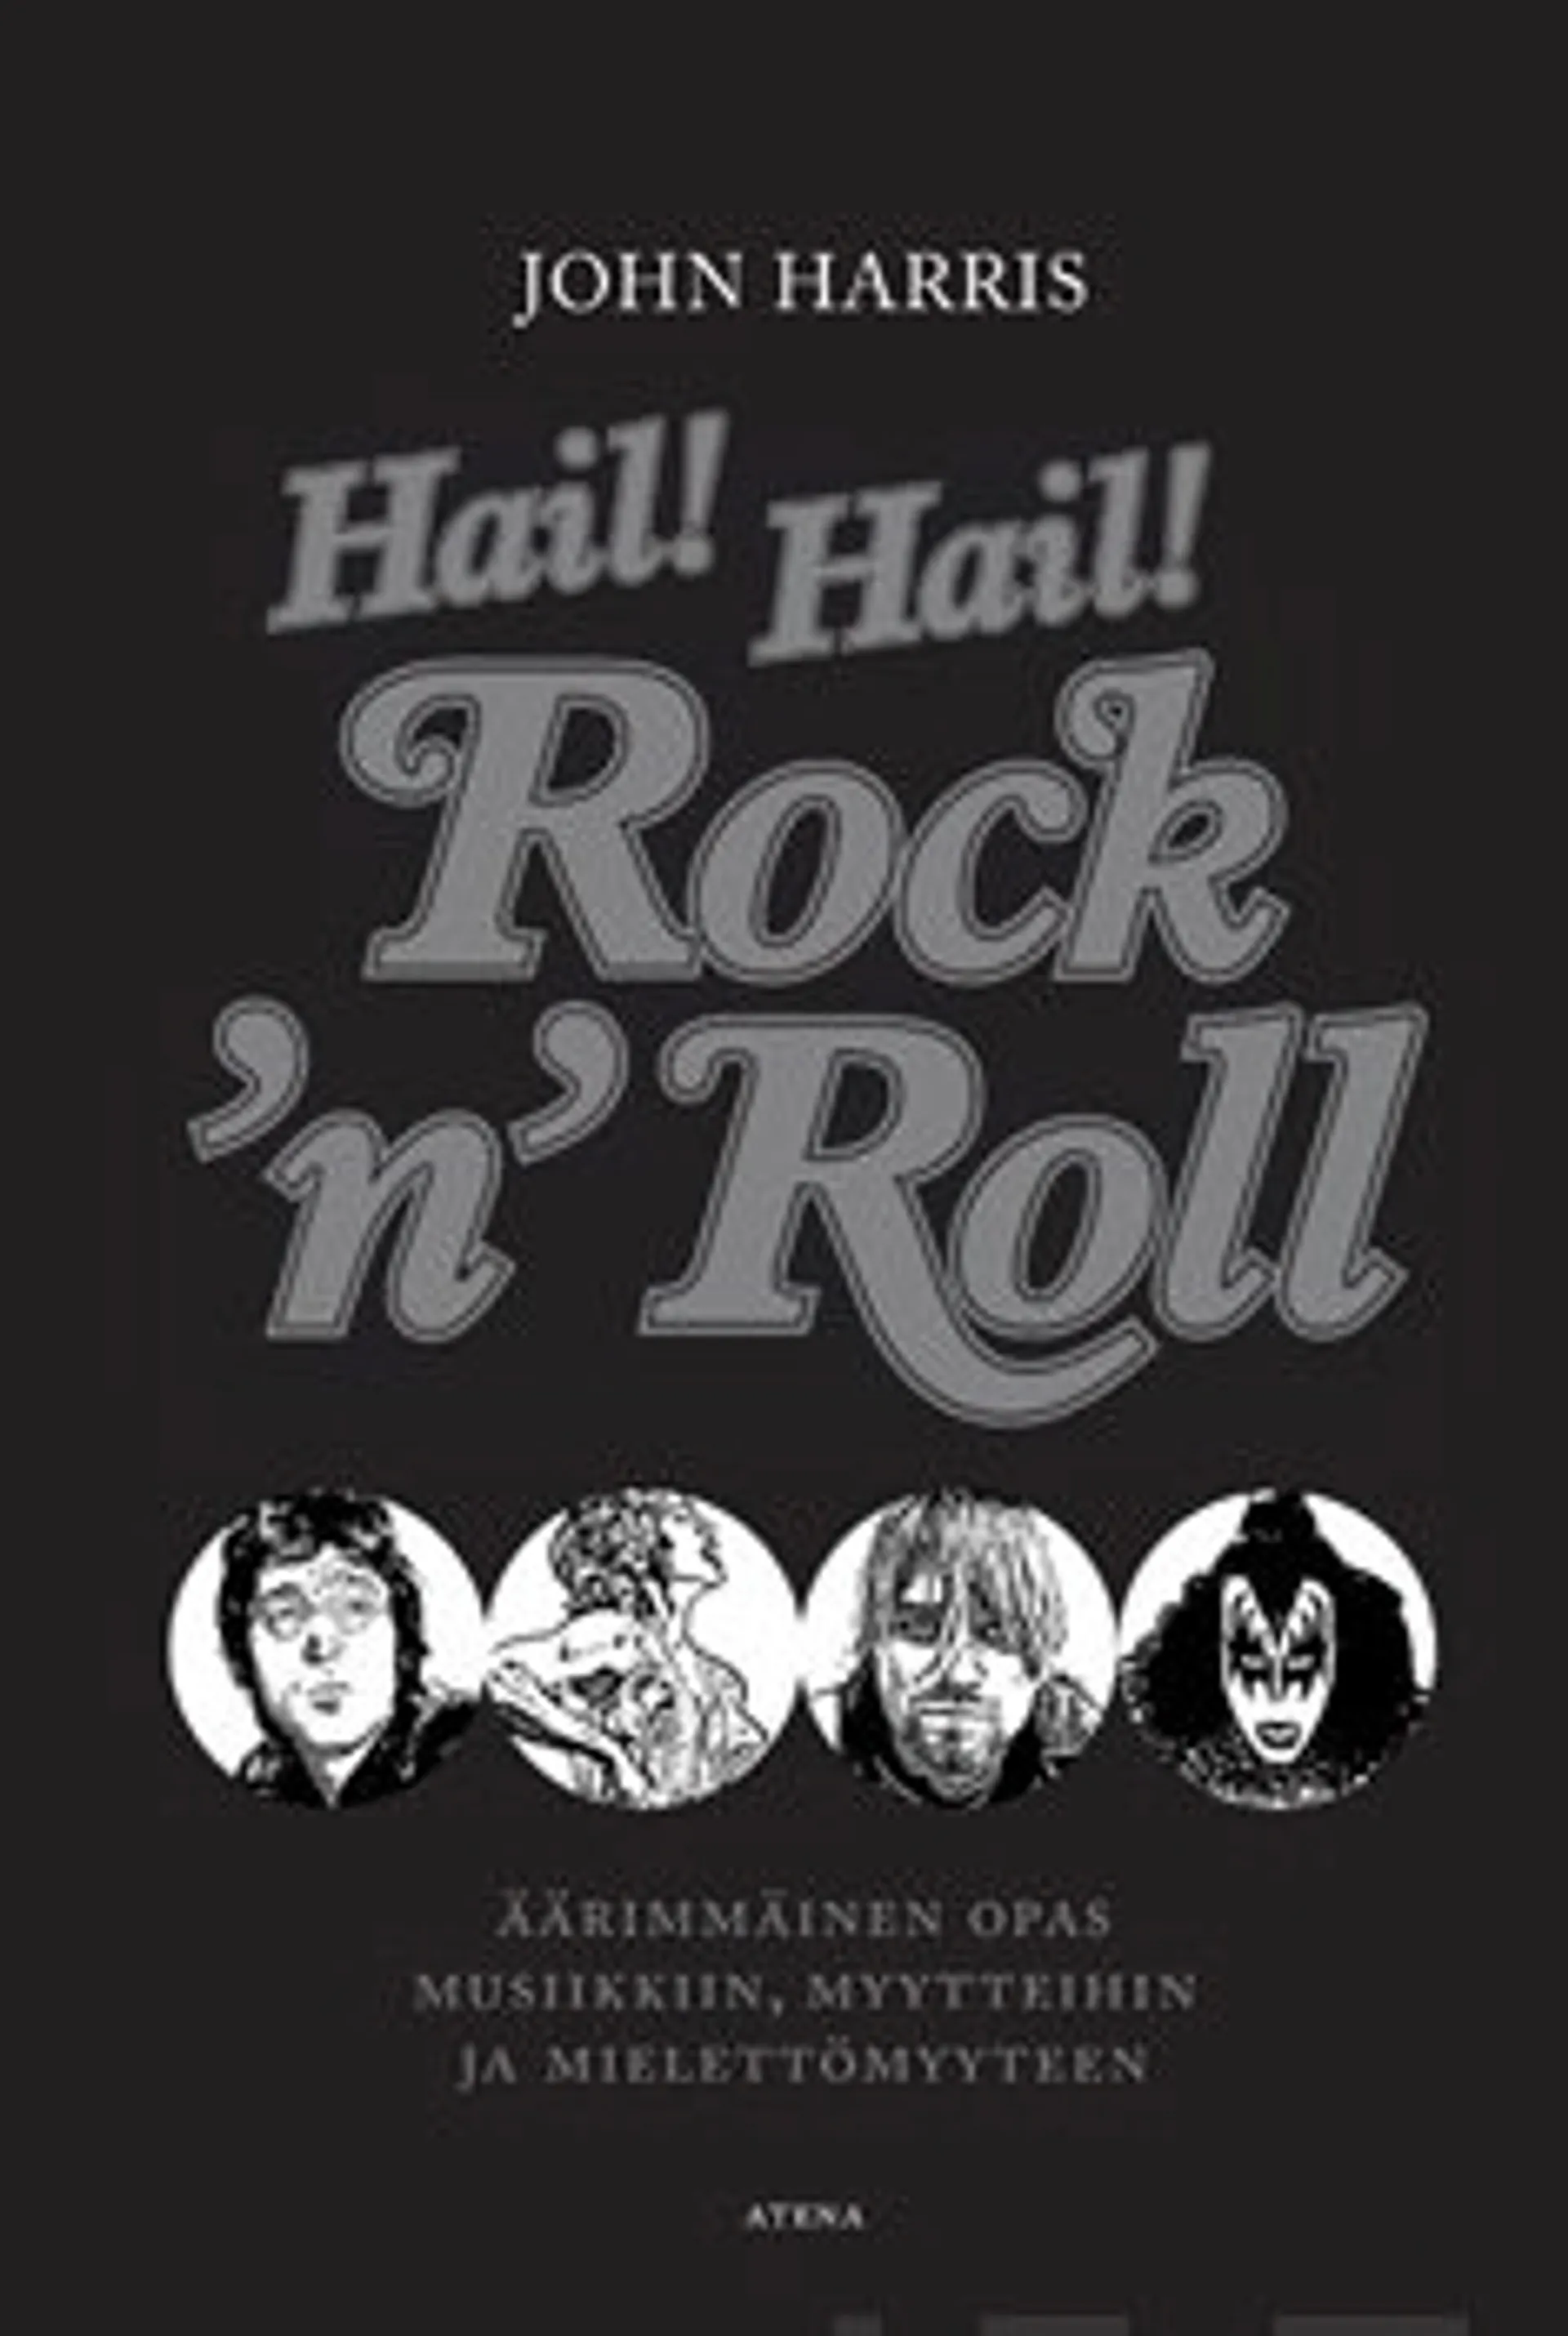 Hail! Hail! Rock'n'roll